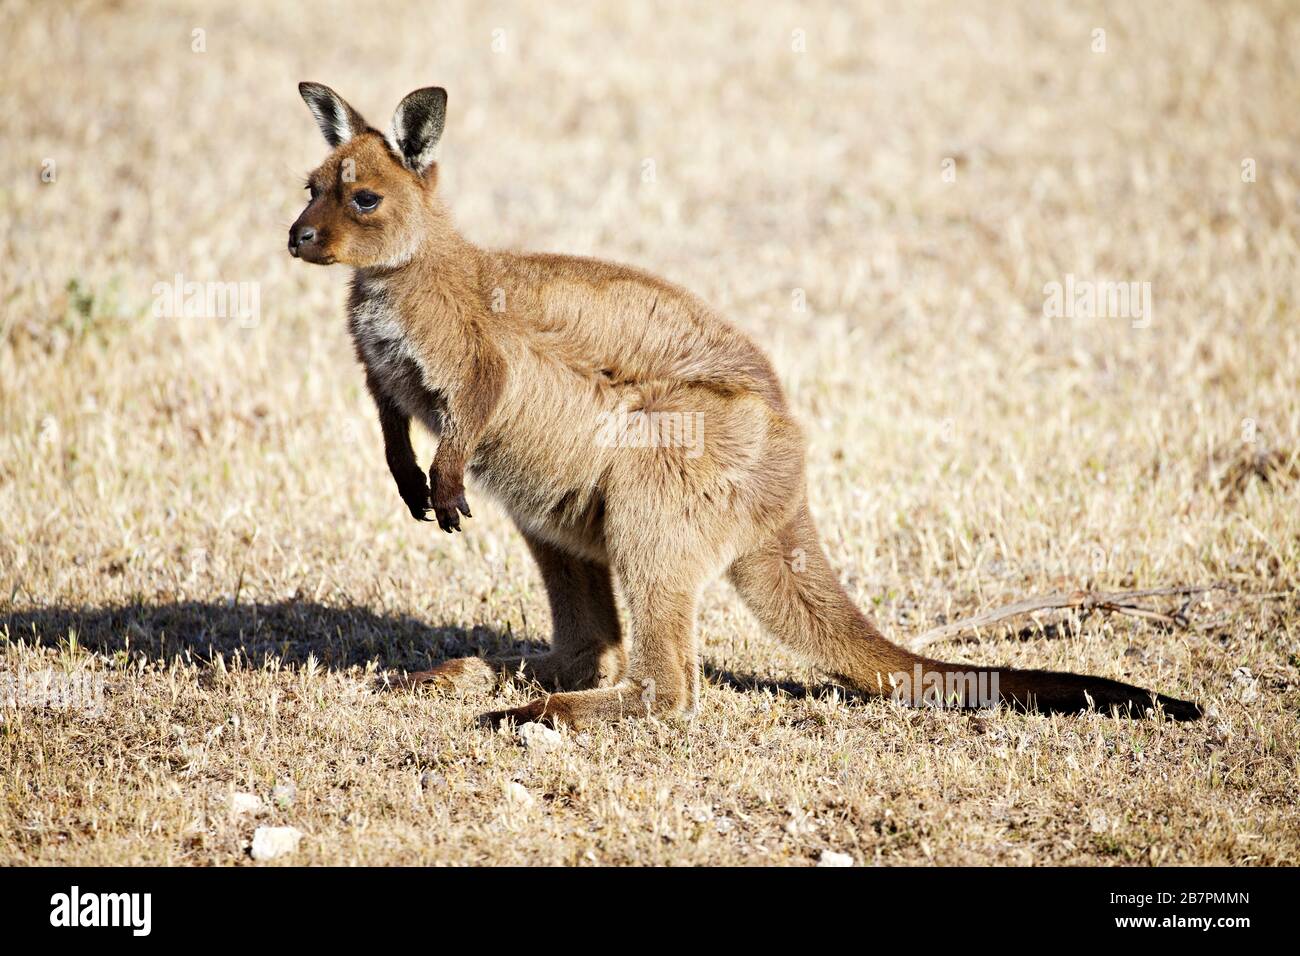 Kangaroo on Kangaroo Island Stock Photo